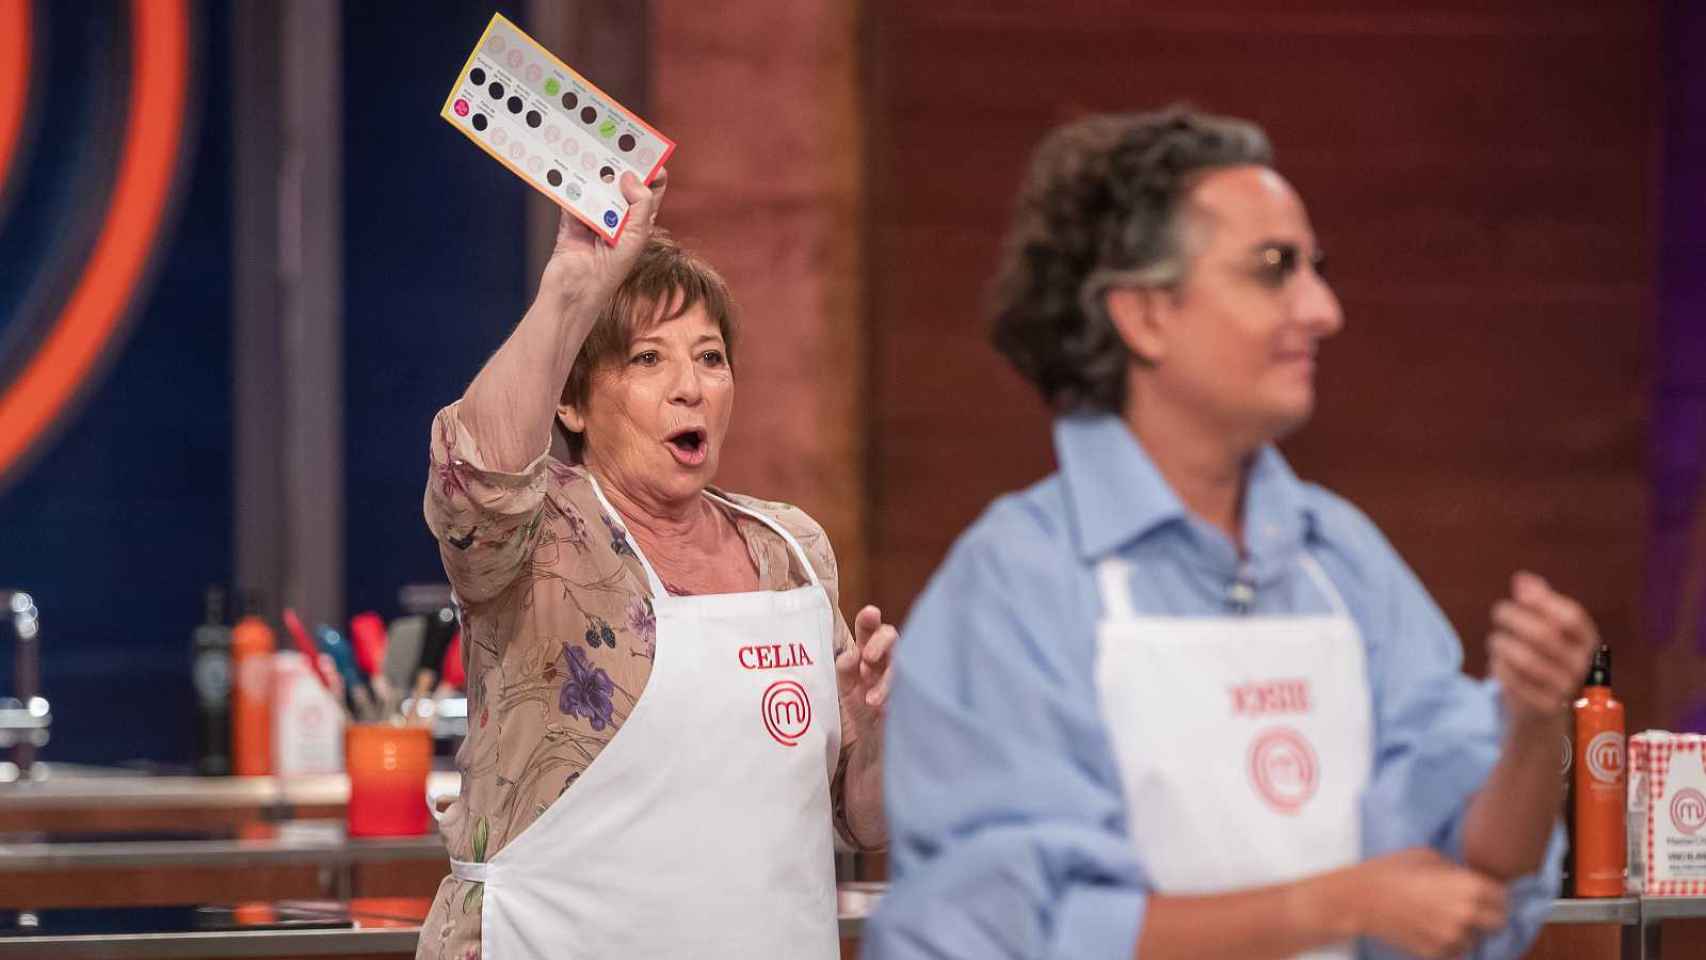 Celia Villalobos gana el bingo de 'Masterchef' / TVE